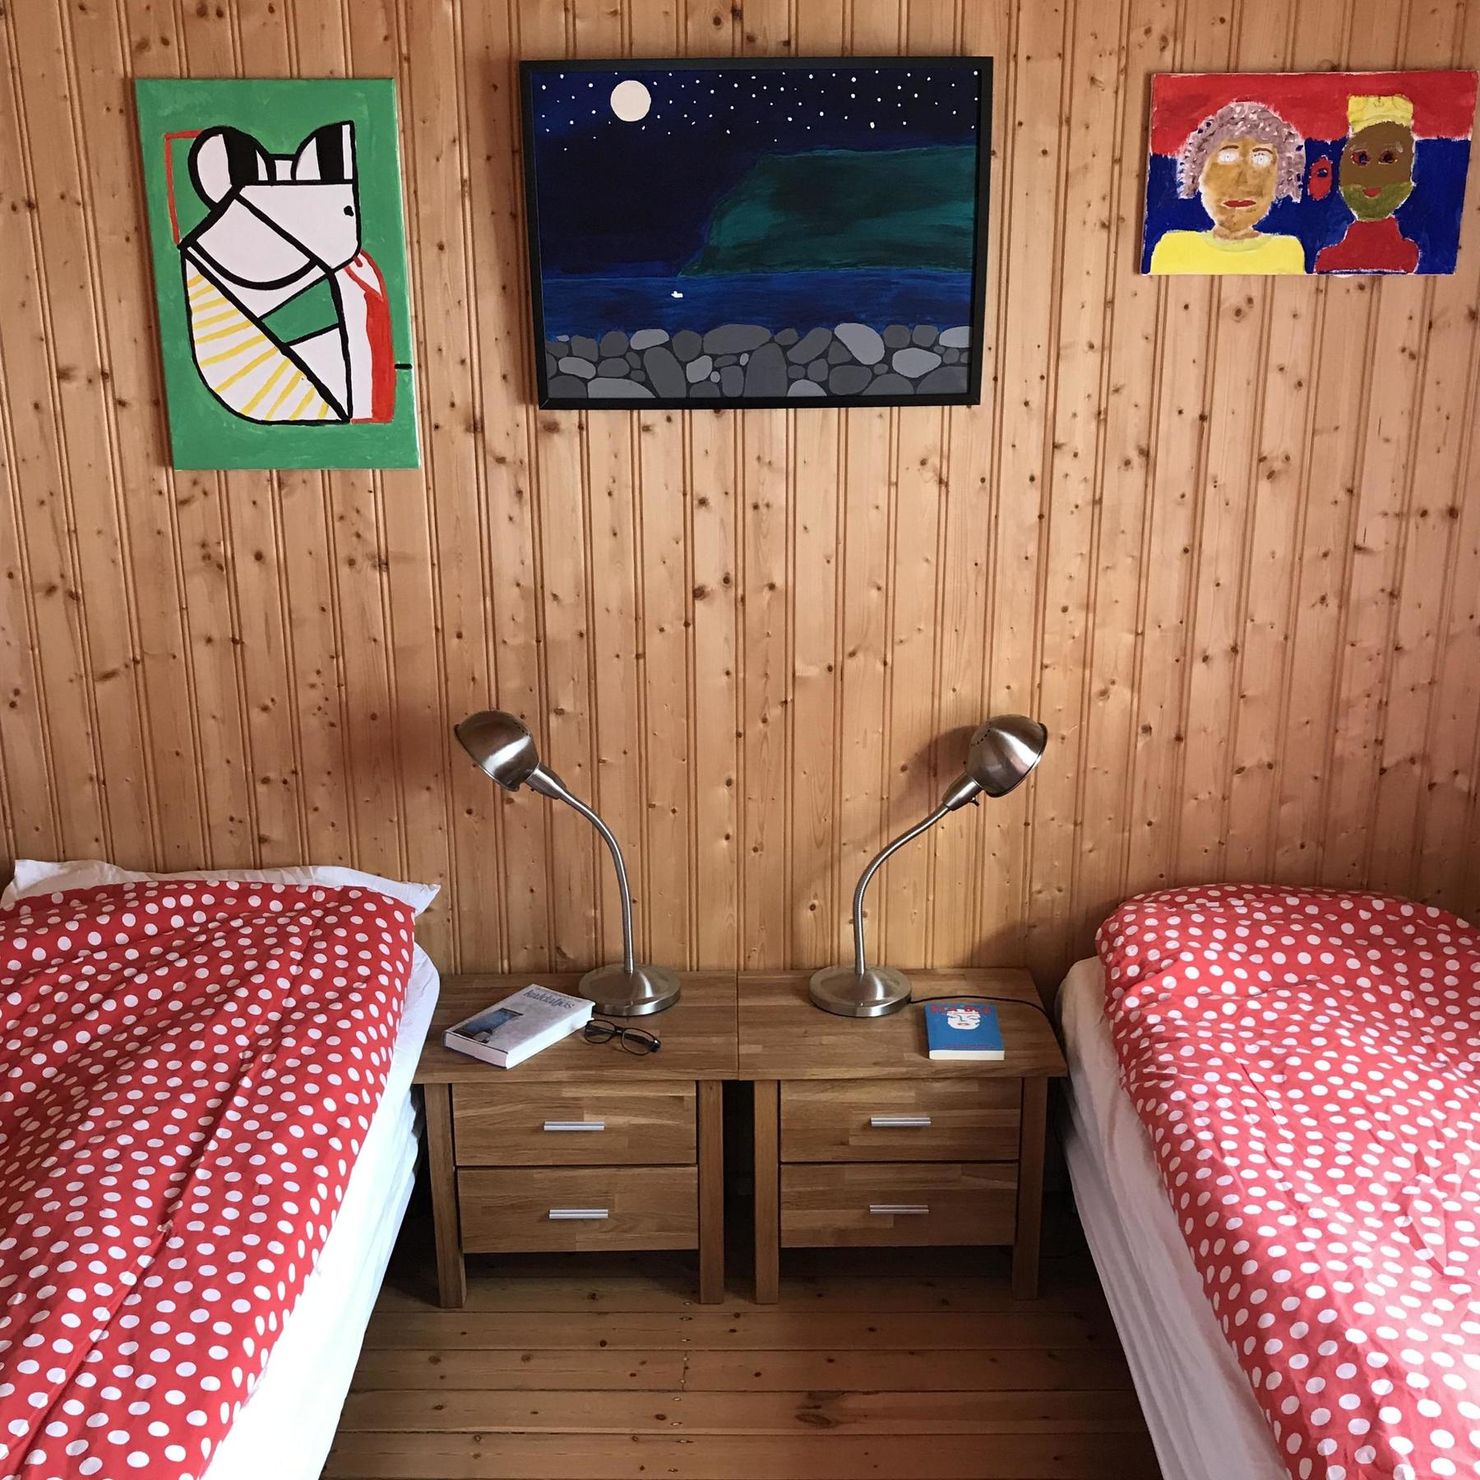 Gemütliches Schlafzimmer mit zwei Einzelbetten